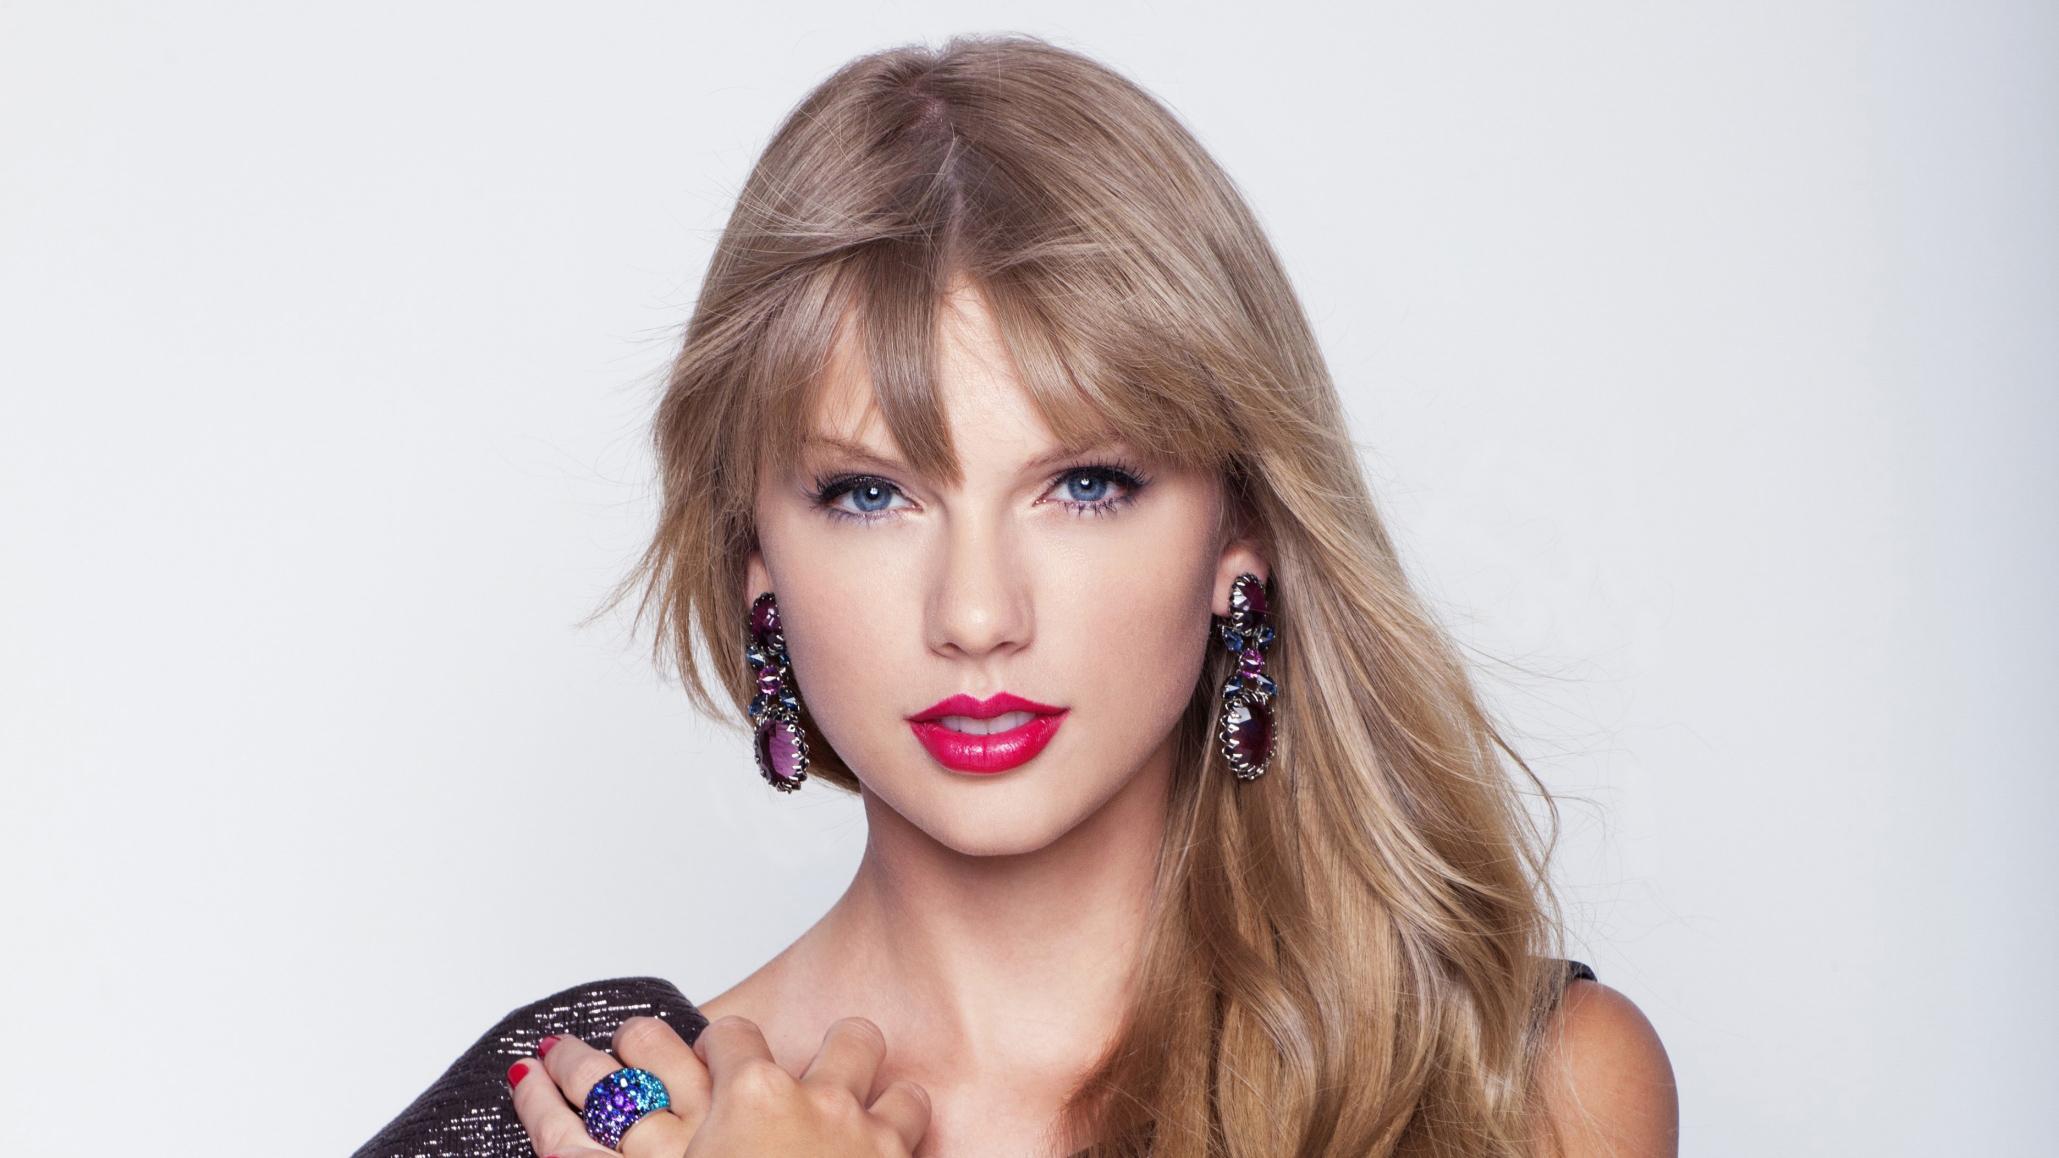 Taylor Swift HD Celebrities, 4k Wallpaper, Image